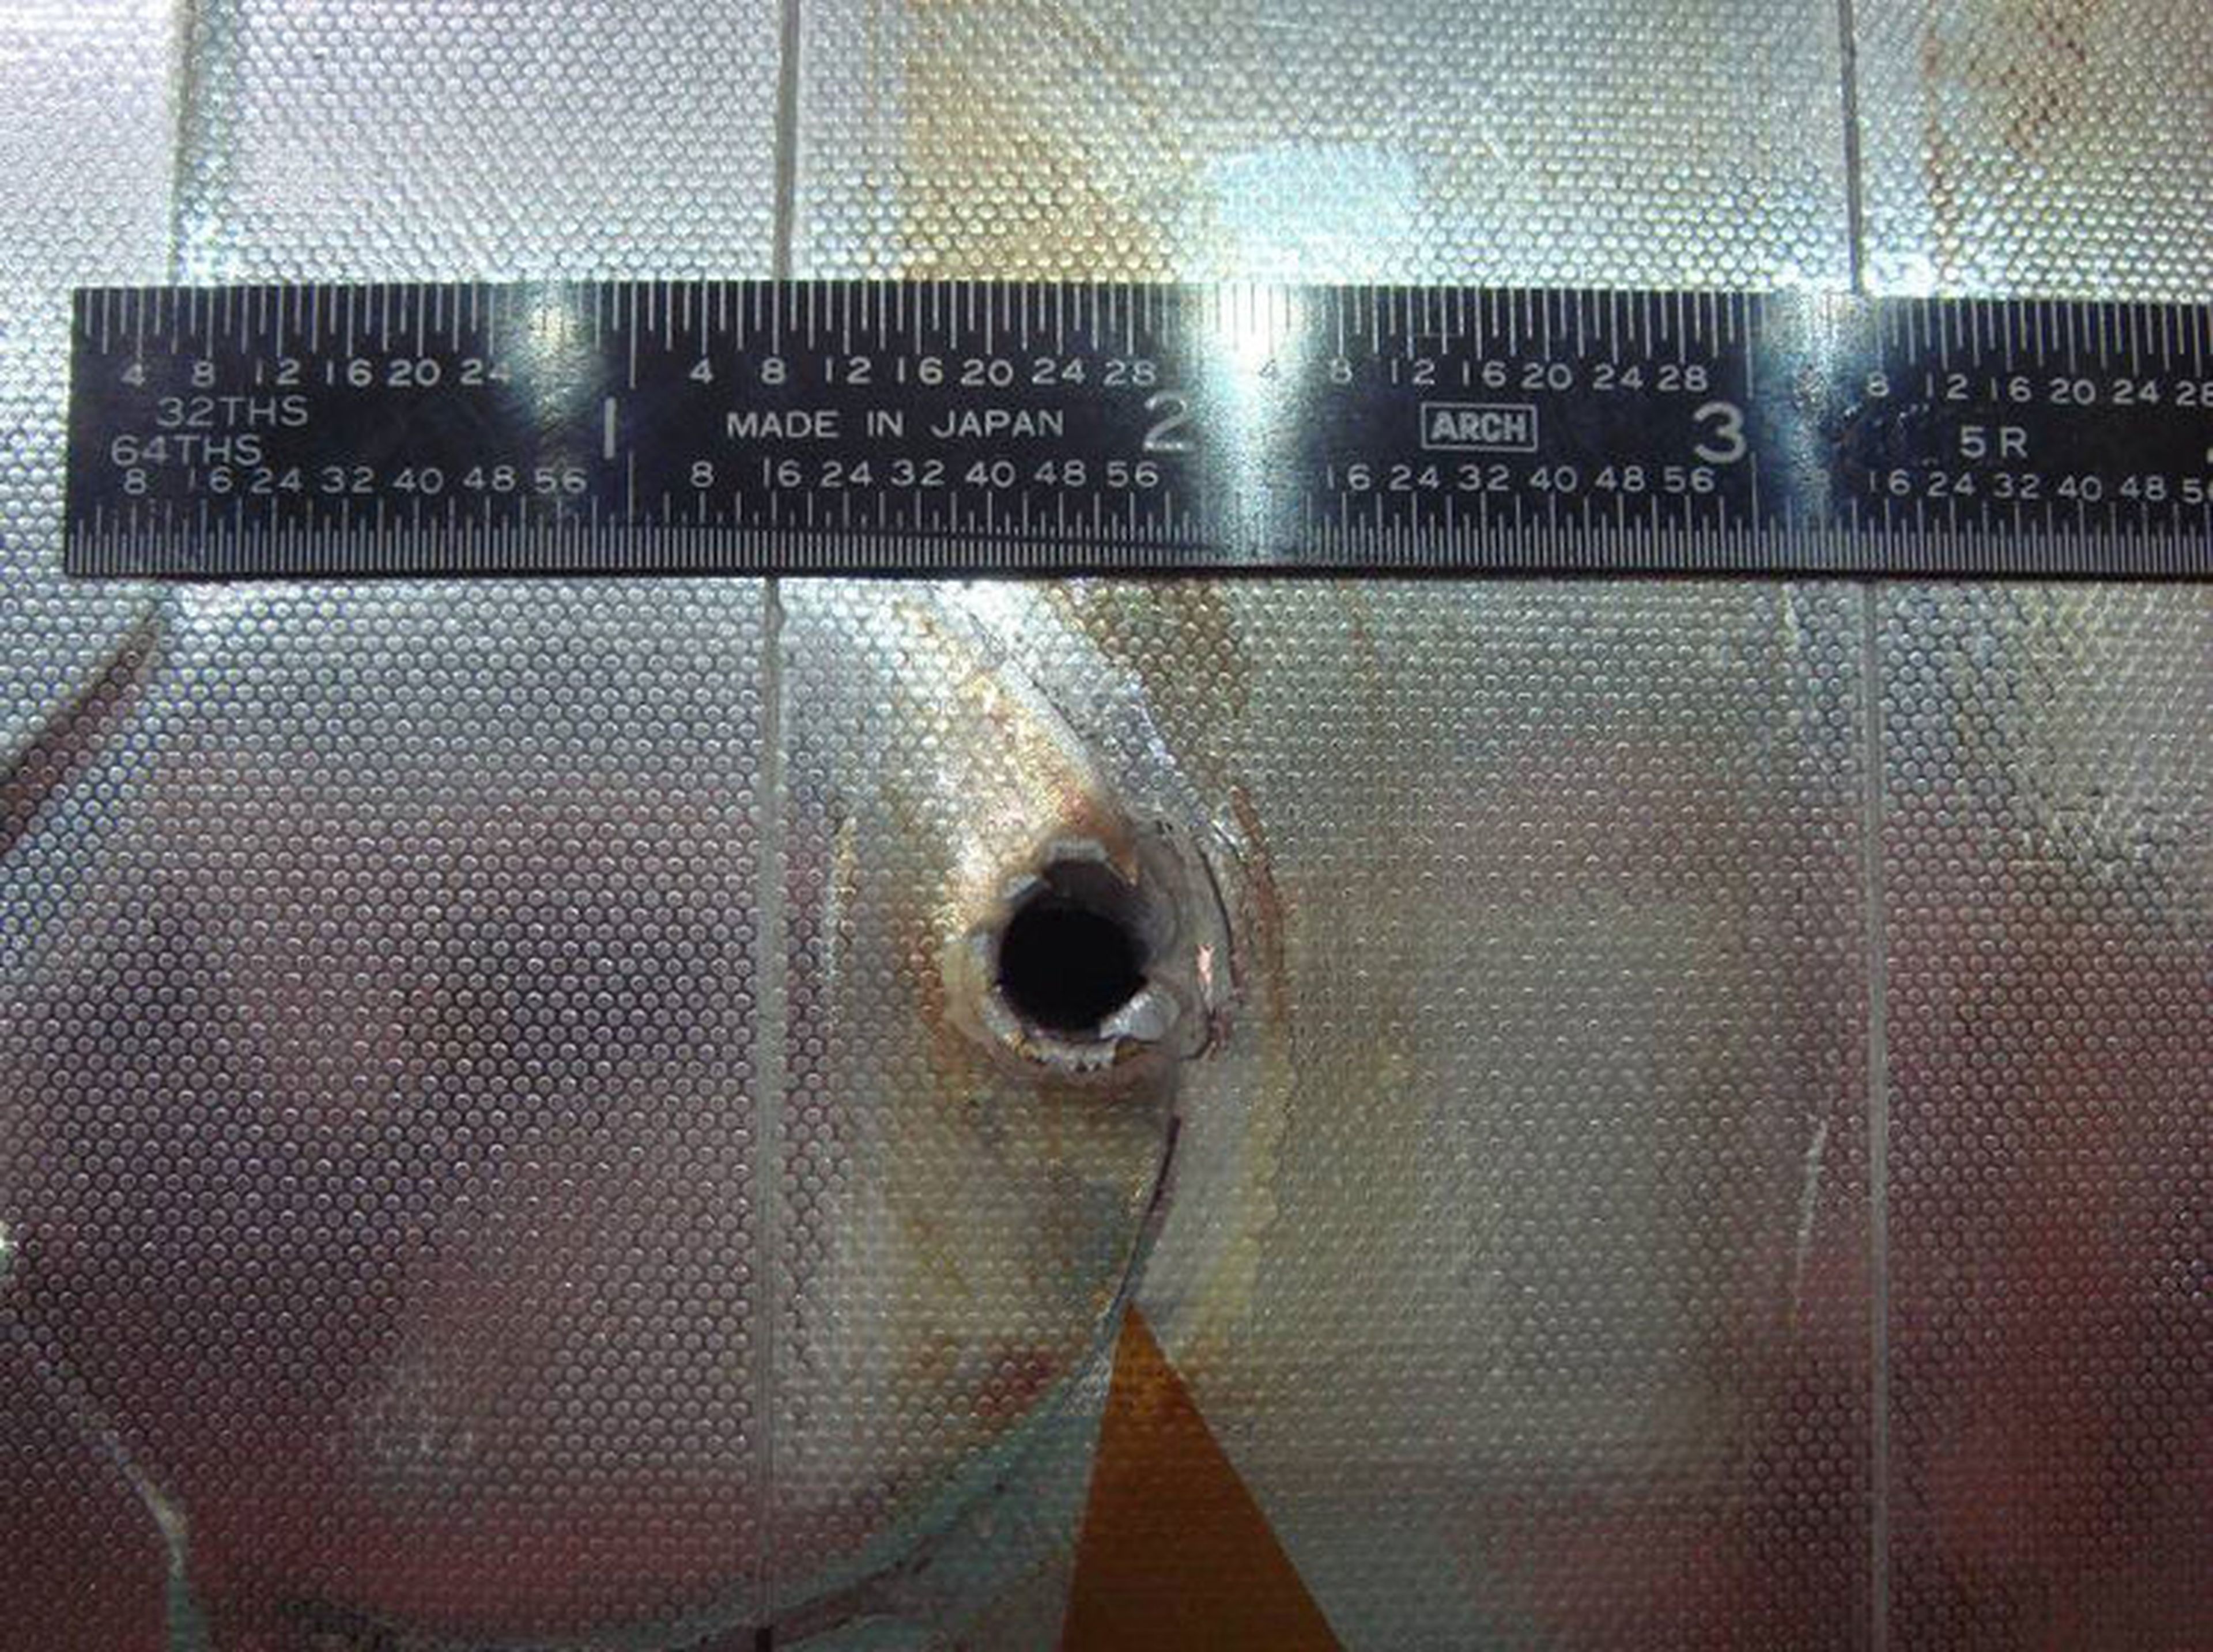 Un golpe de un fragmento espacial al radiador del transbordador espacial Endeavour que se encontró después de una de sus misiones. El orificio de entrada mide aproximadamente 0.63 cm de ancho, y el orificio de salida es dos veces más grande.